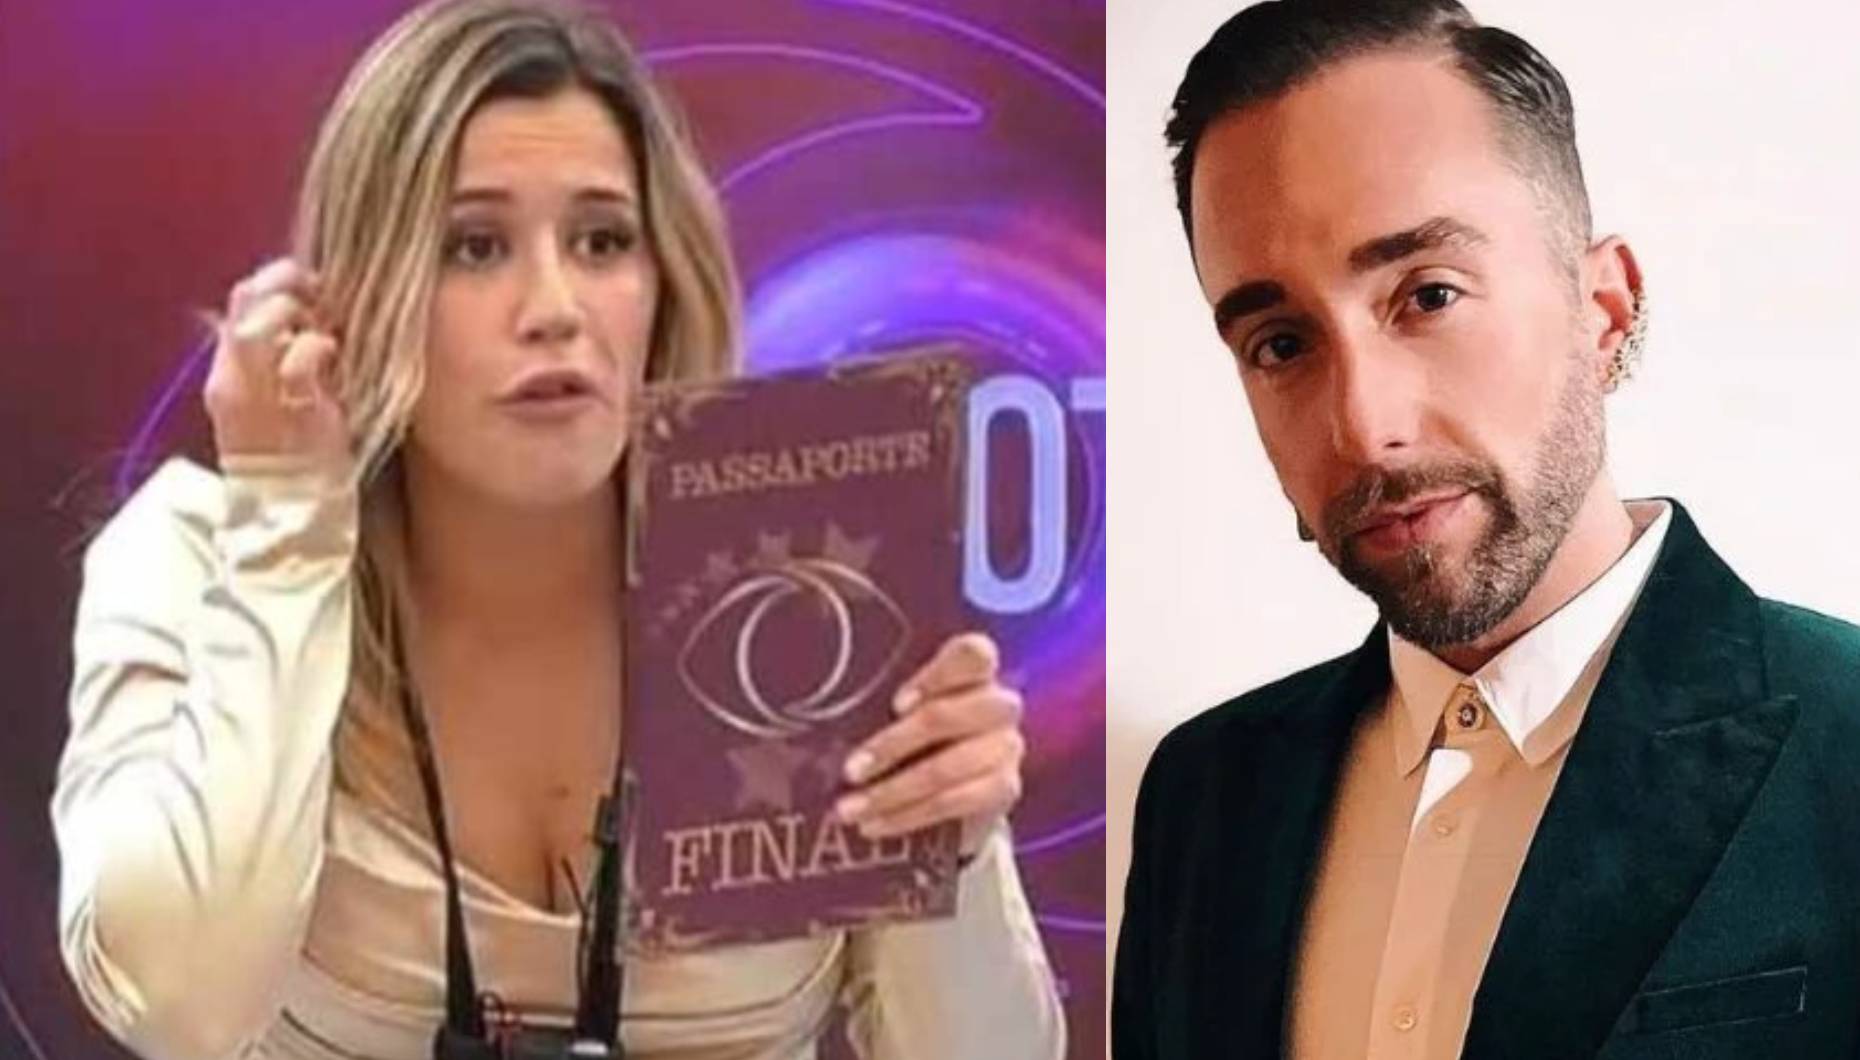 Joana Sobral é finalista do Big Brother. Tiago Rufino deixa recado: “Se fosse o Zaza a ganhar diriam que é manipulação?”